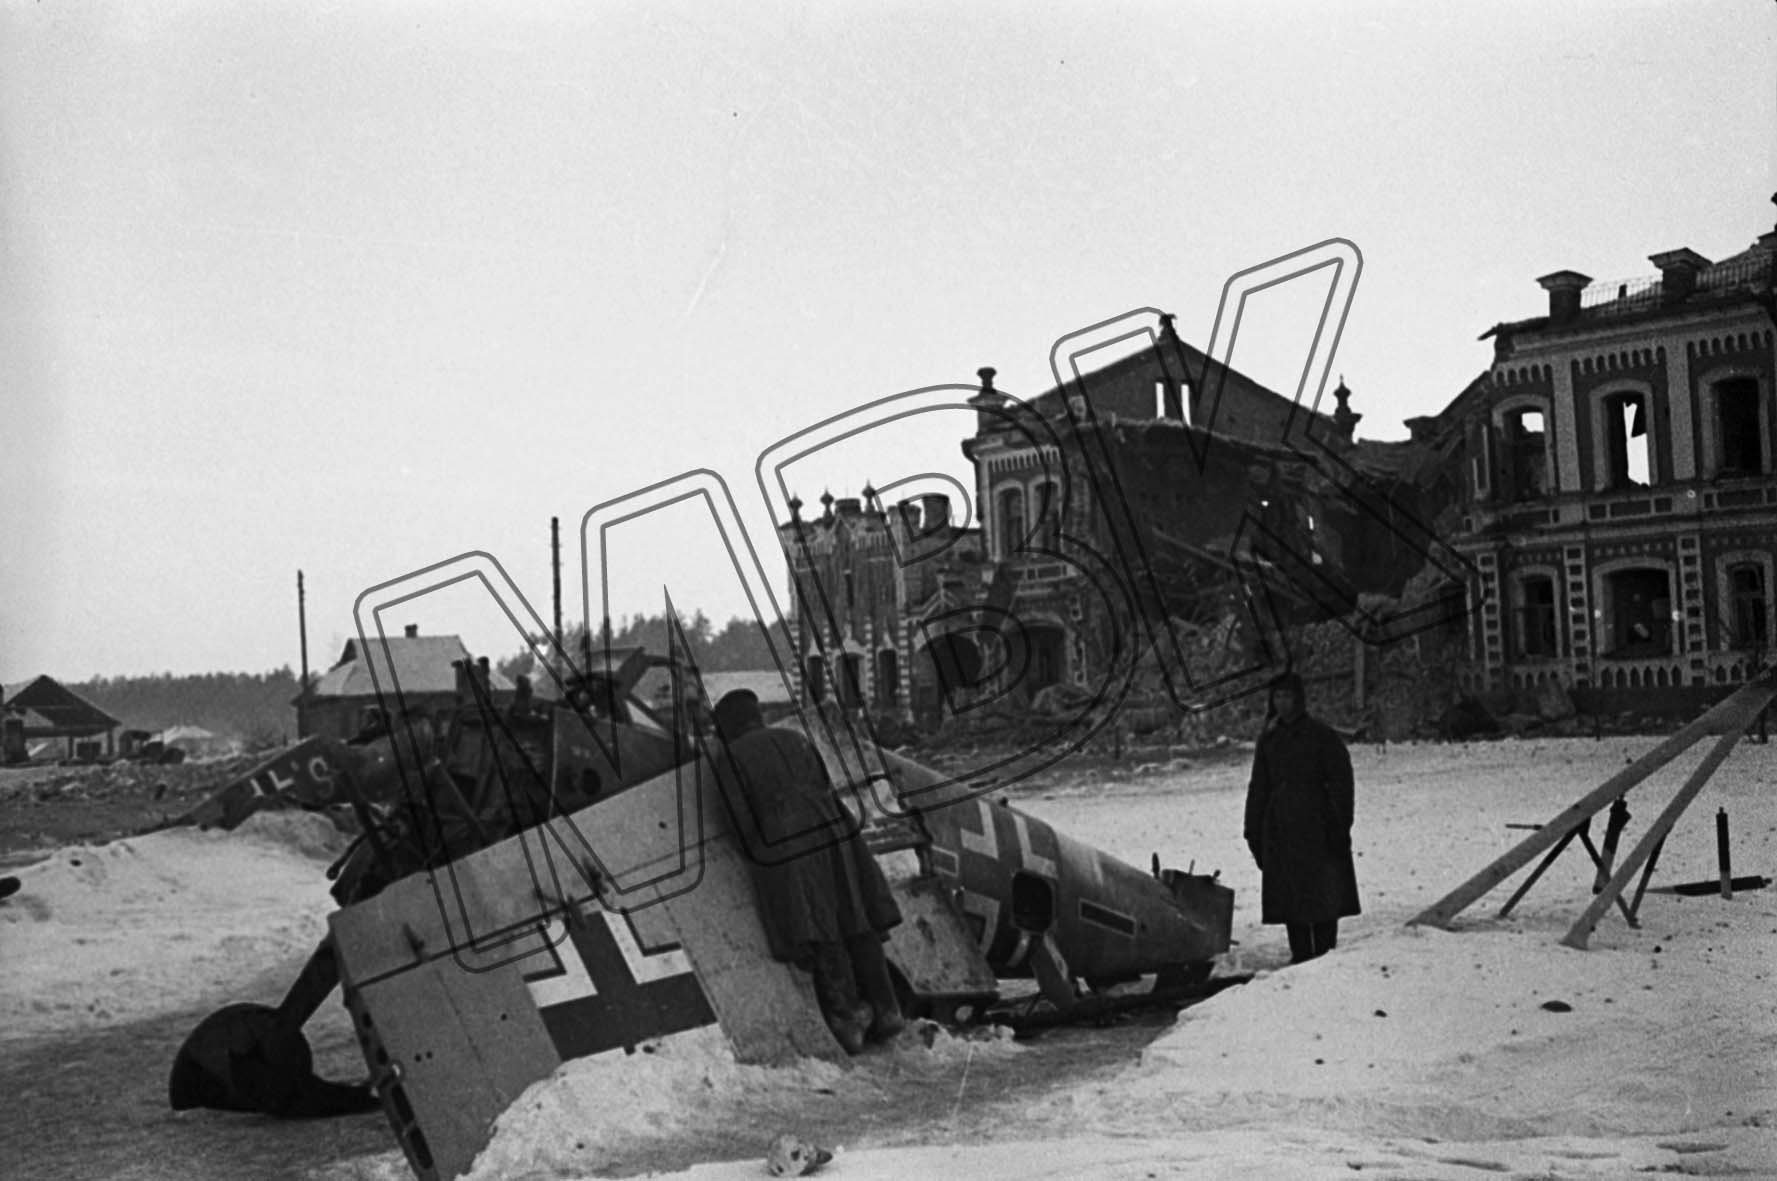 Fotografie: Abgeschossenes deutsches Militärflugzeug in der zerstörten Stadt Juchnow, Gebiet Kaluga, 6. März 1942 (Museum Berlin-Karlshorst RR-P)